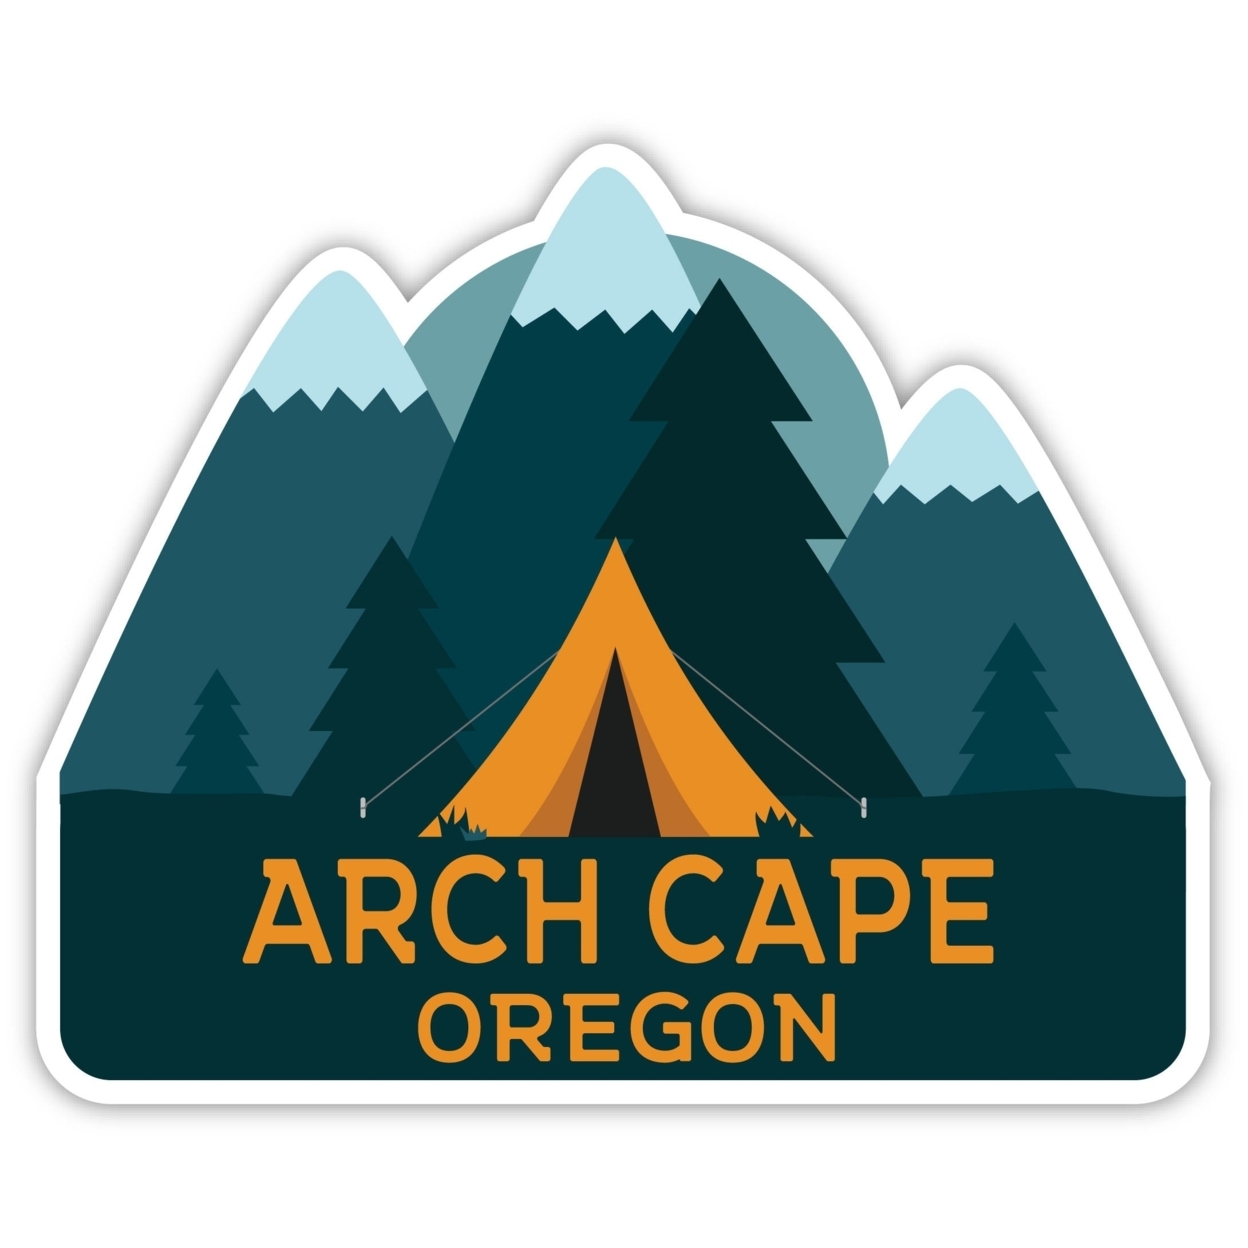 Arch Cape Oregon Souvenir Decorative Stickers (Choose Theme And Size) - Single Unit, 12-Inch, Tent